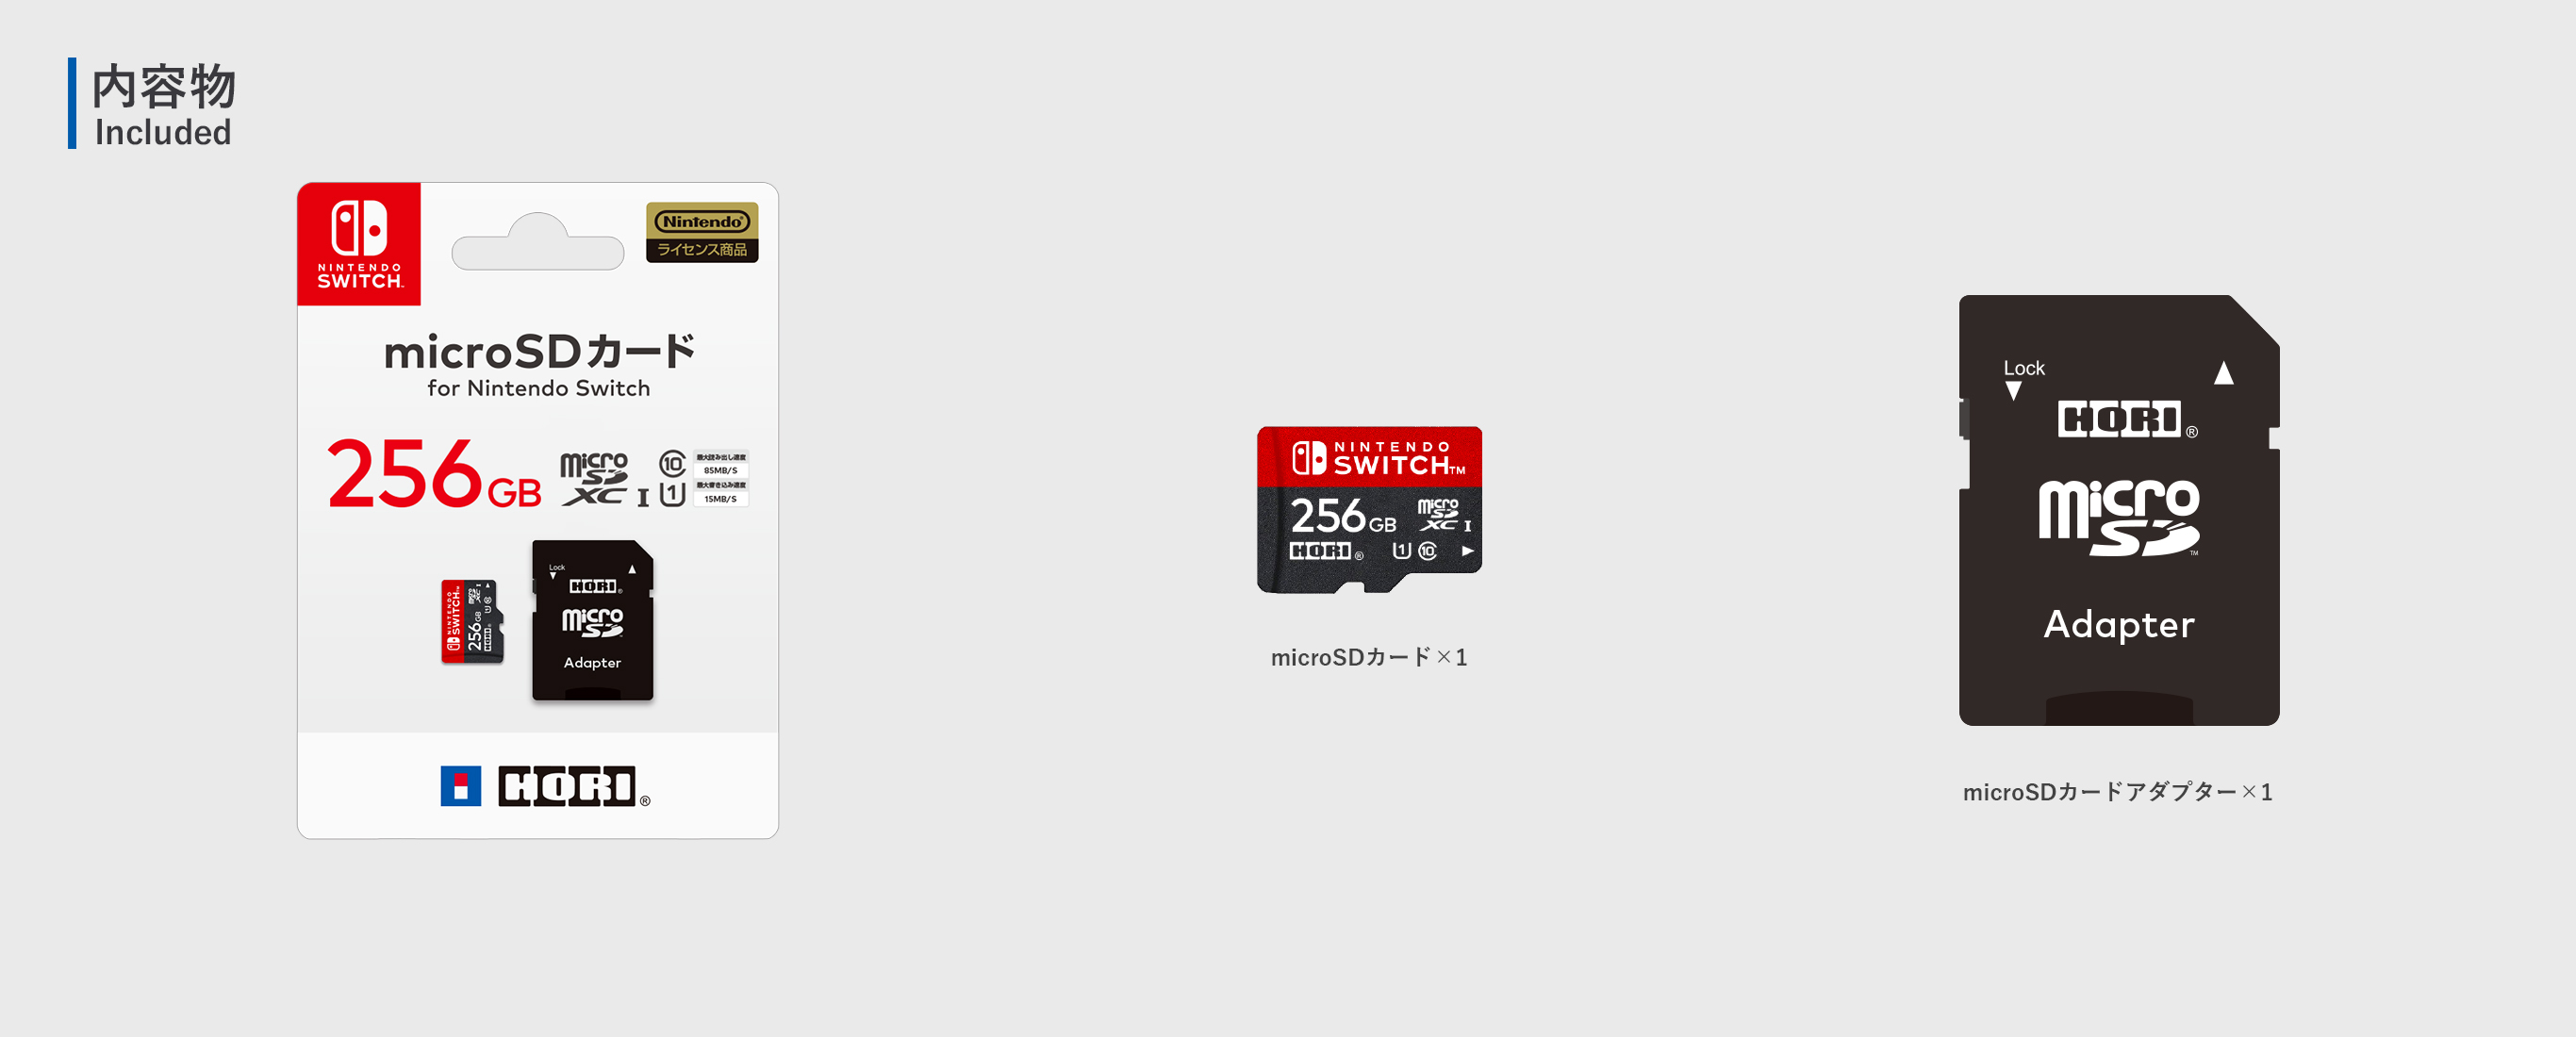 株式会社 HORI | microSDカード for Nintendo Switch 256GB